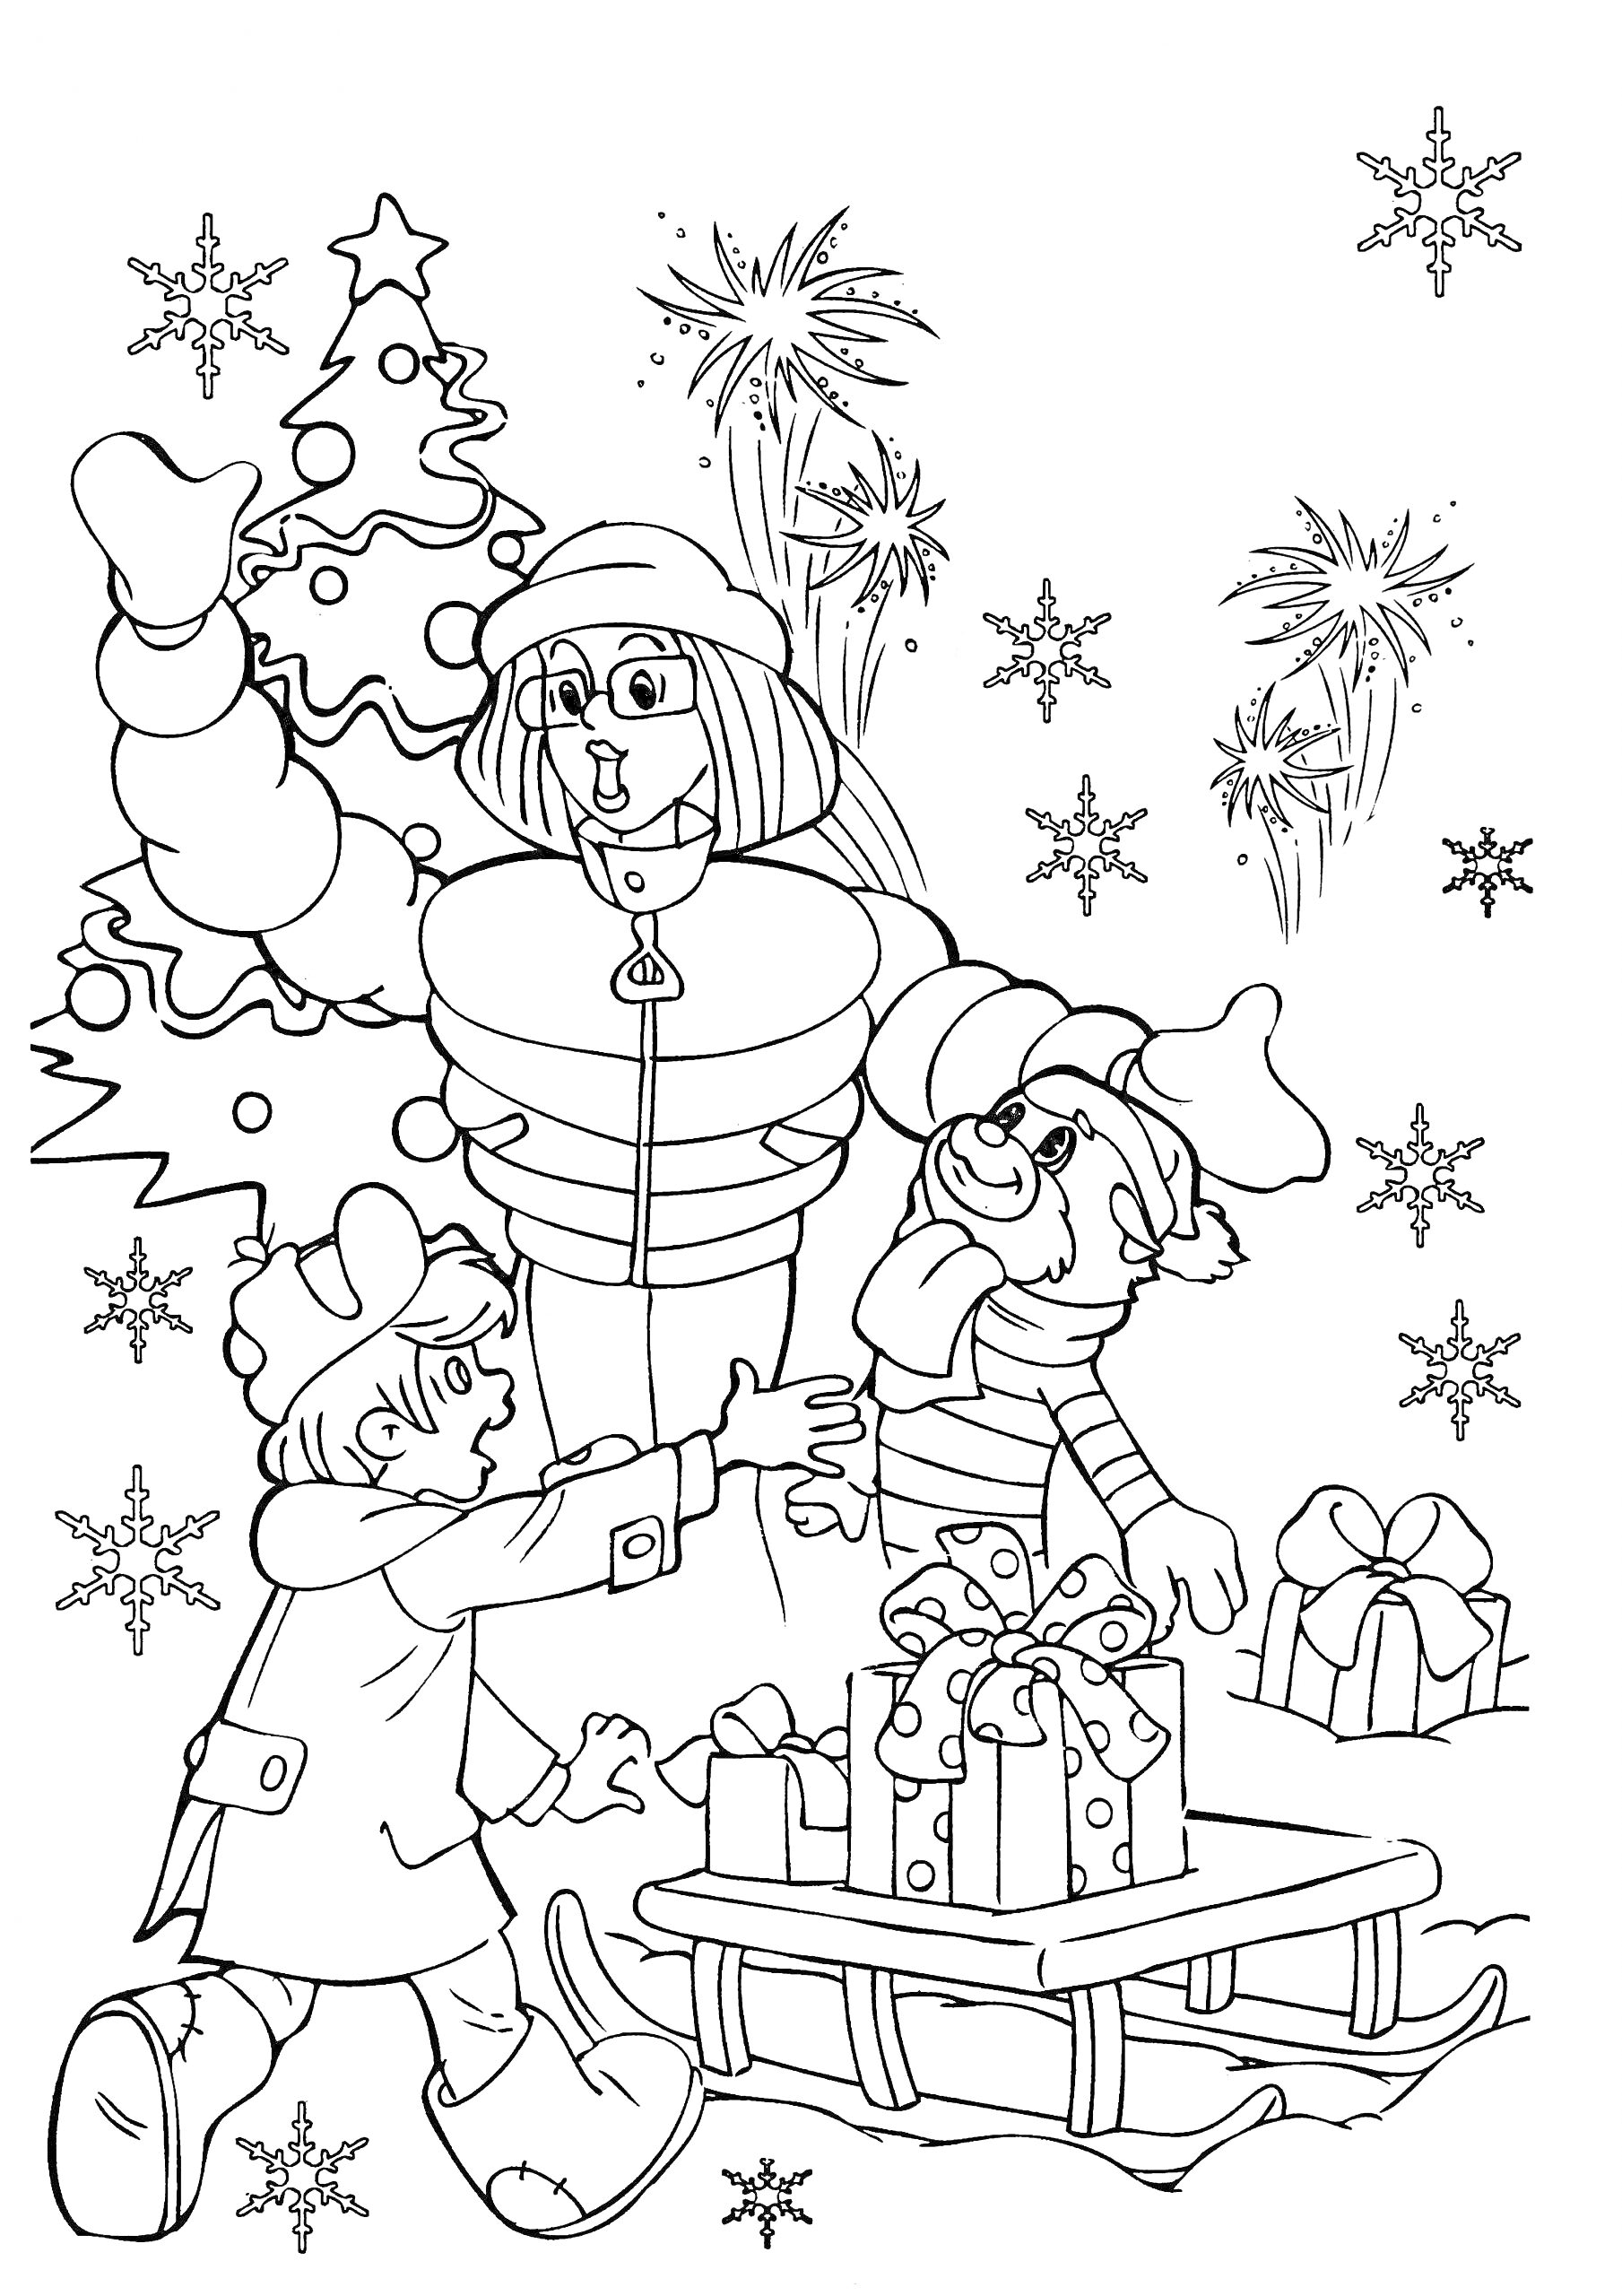 Дед Мороз, мальчик и собака возле рождественской ёлки с подарками на санках, снежинками и фейерверками на заднем плане